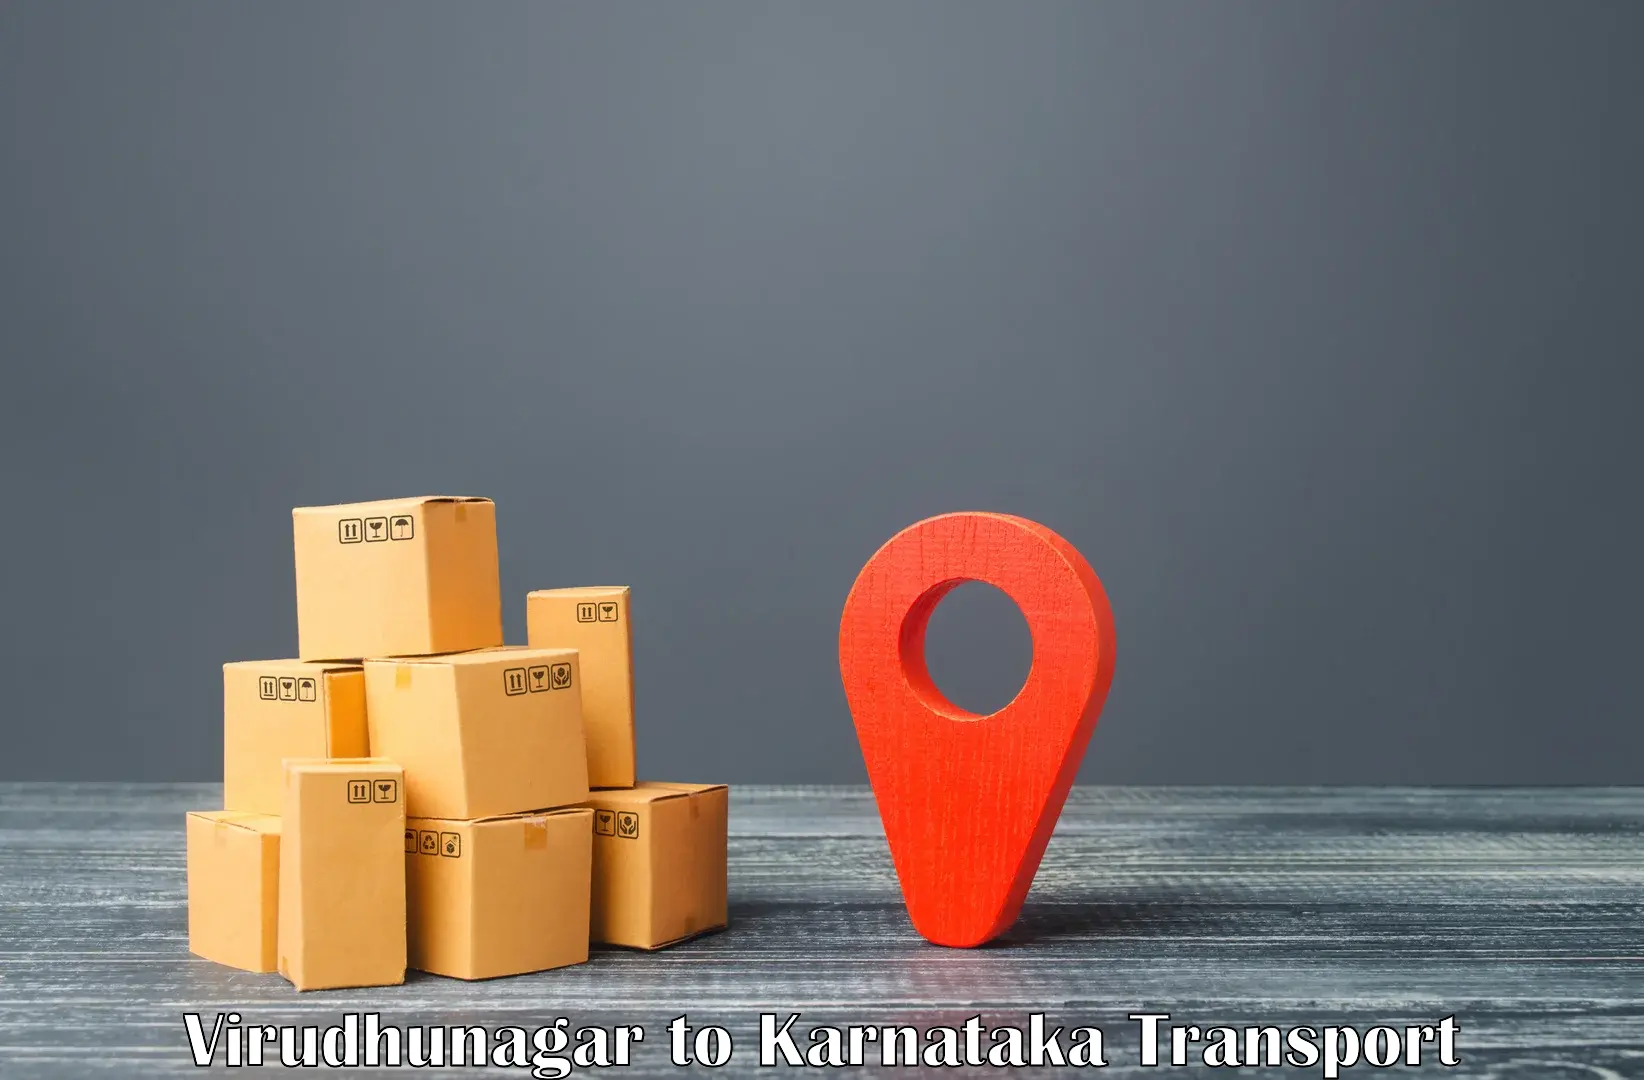 Container transport service Virudhunagar to Kanjarakatte